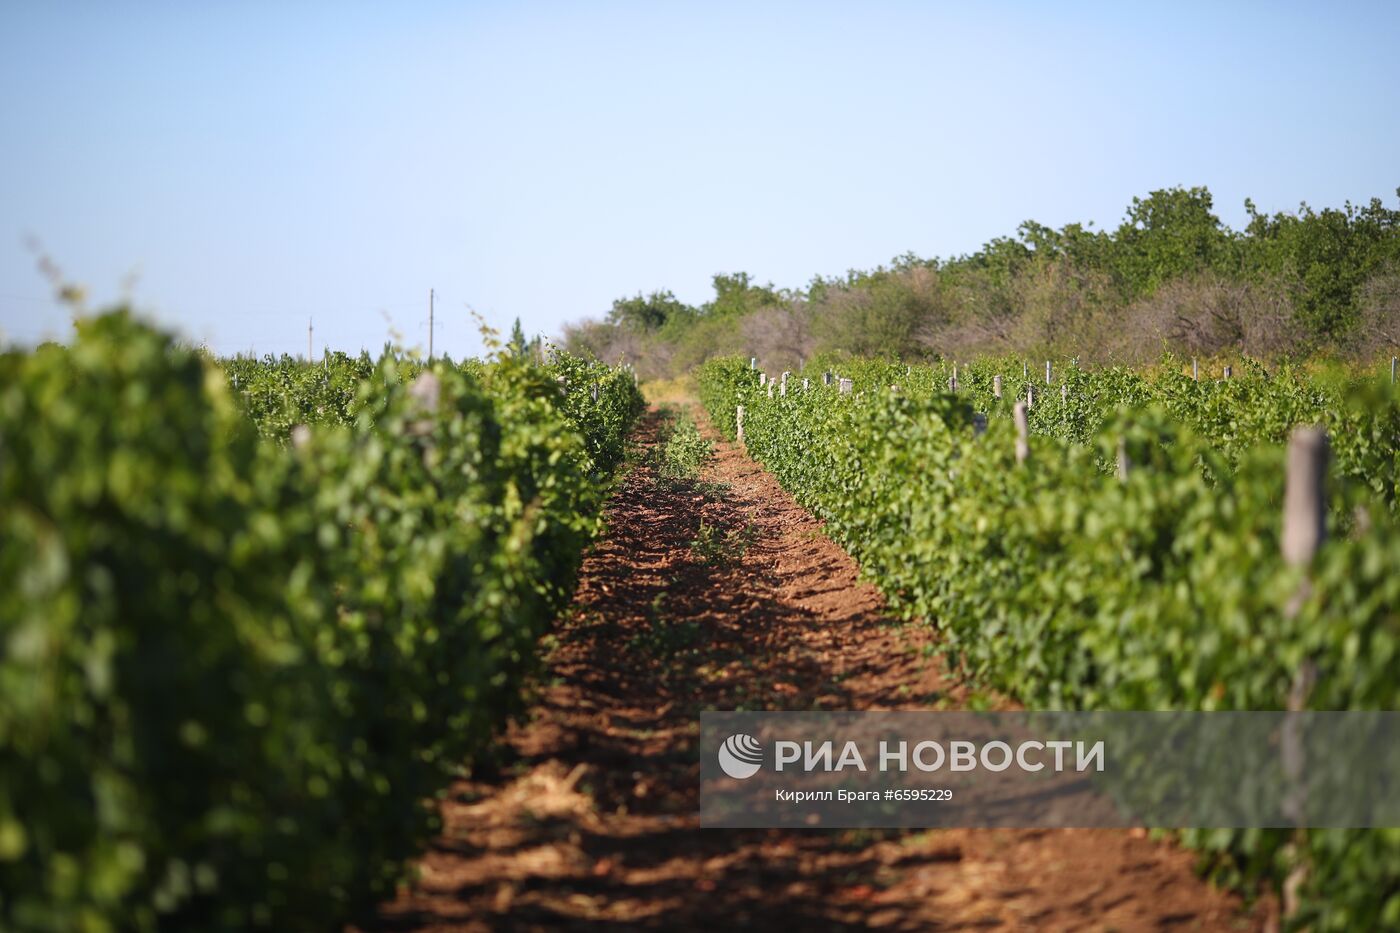 Винодельня "Покровская" в Волгоградской области